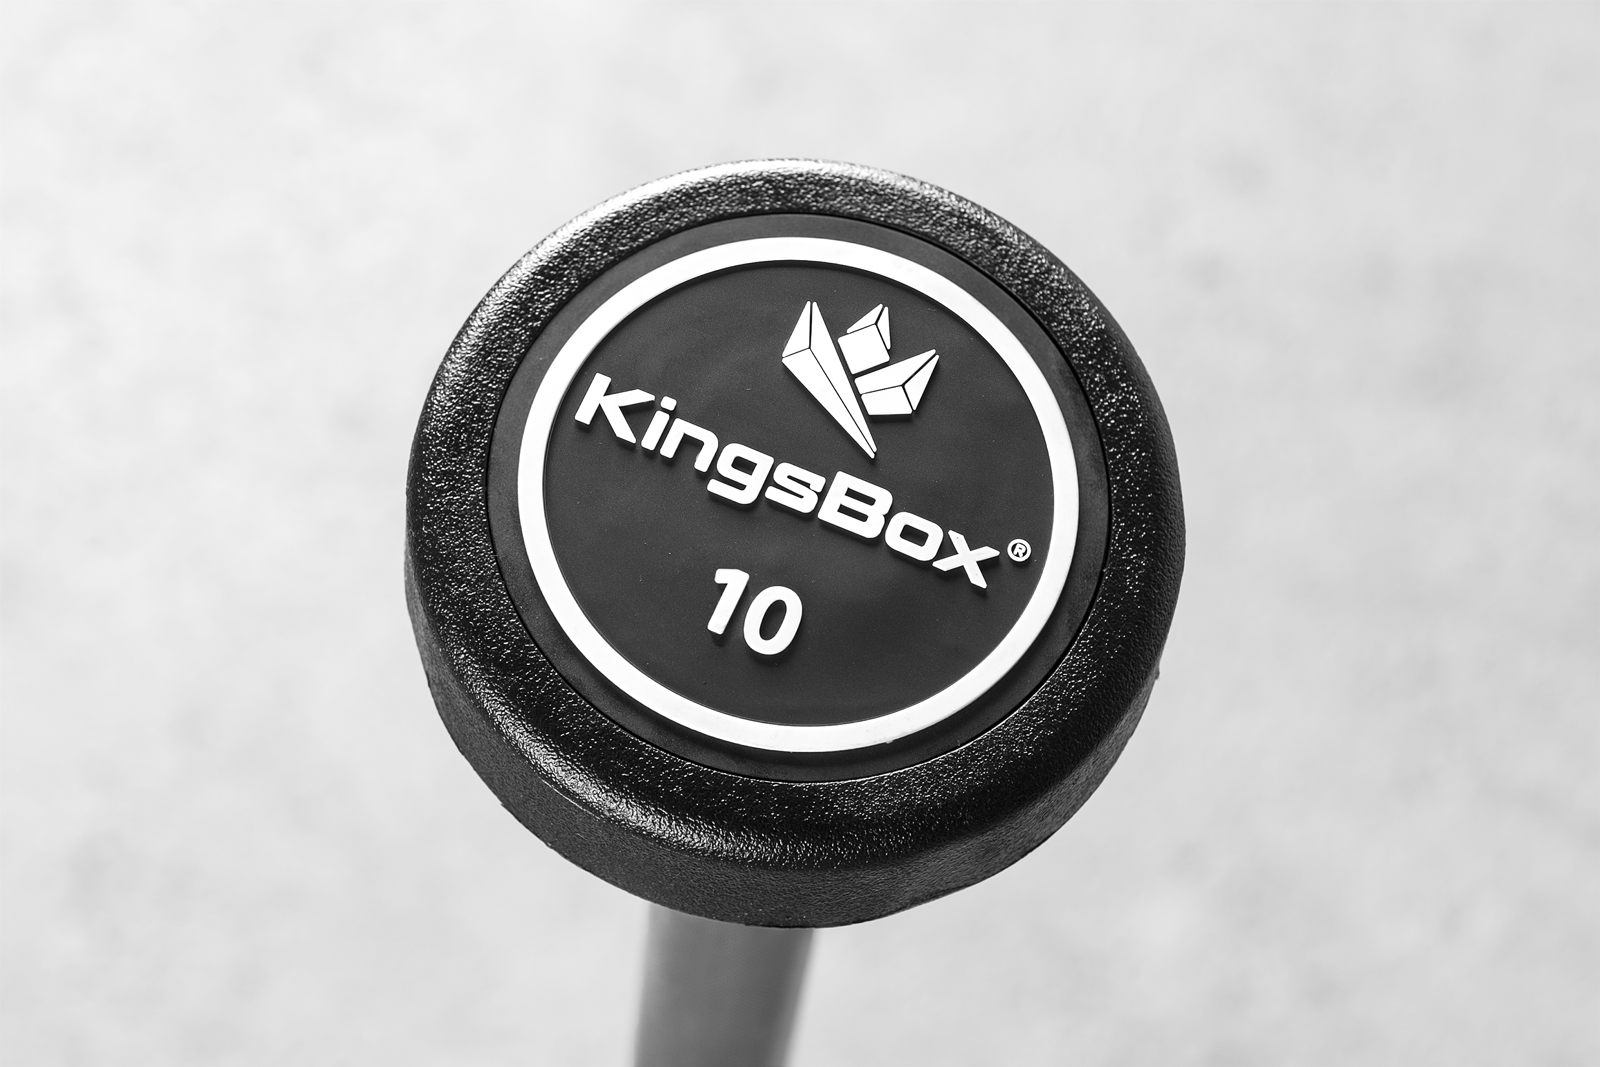 KINGSBOX Kingsbox ELITE 2.0 - Chaleco lastrado black - Private Sport Shop